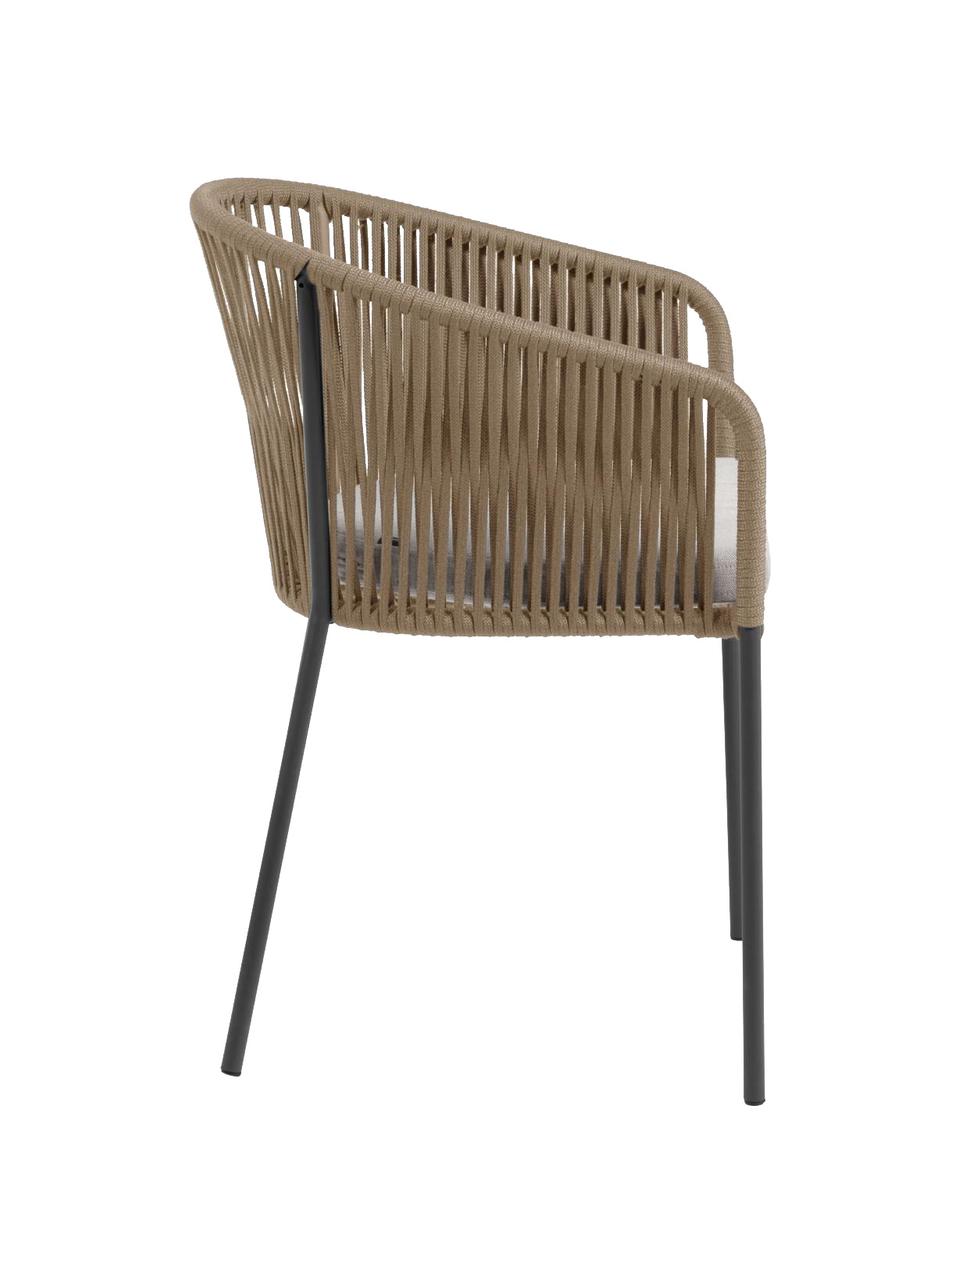 Zahradní židle Yanet, Světle hnědá, taupe, Š 56 cm, H 55 cm